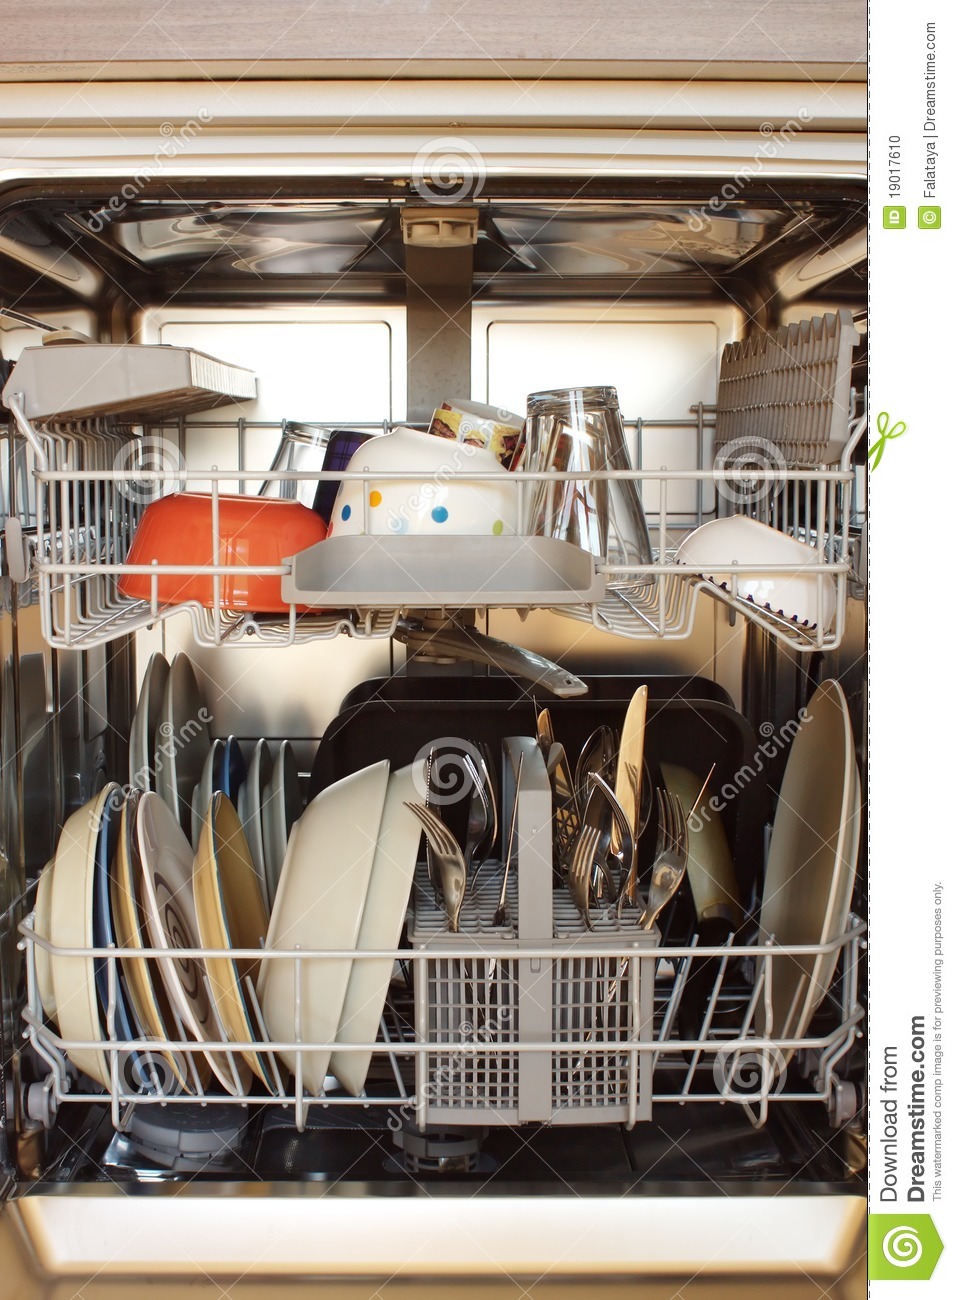 Open Dishwasher Stock Photo   Image  19017610